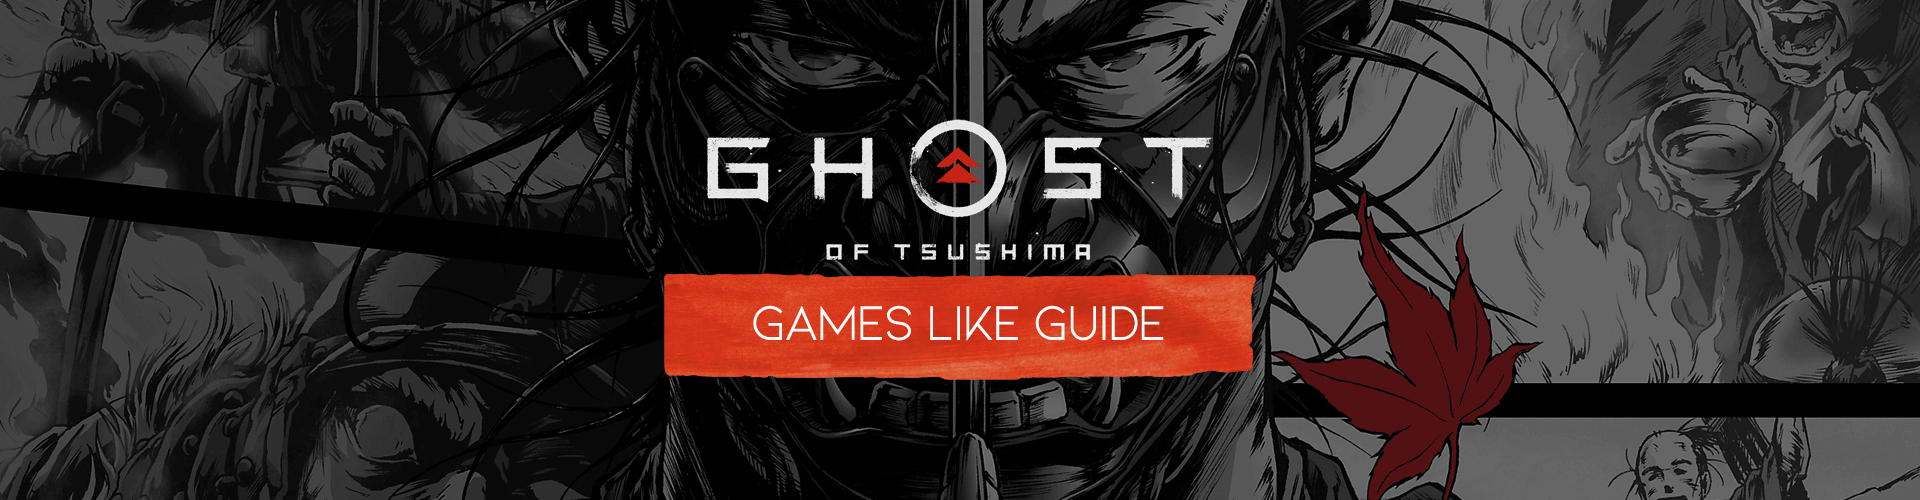 Giochi come Ghost of Tsushima